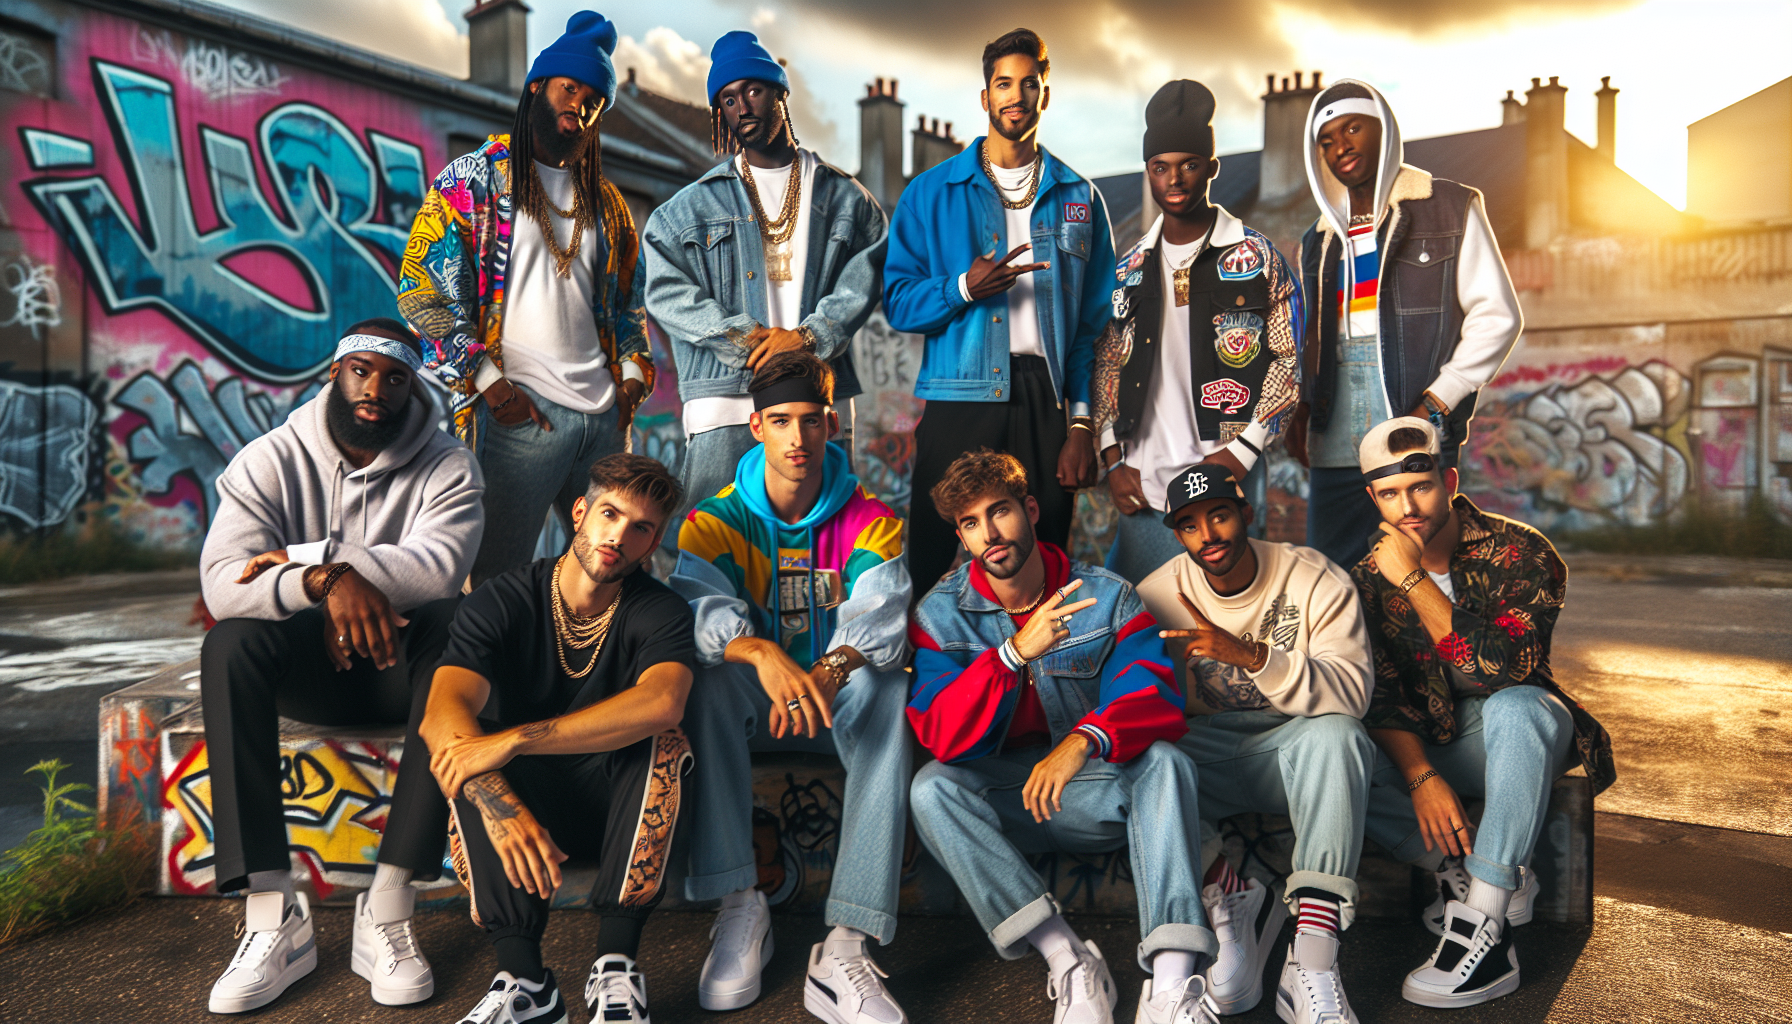 découvrez l'influence du mouvement streetwear sur l'évolution du rap français dans cet article captivant.